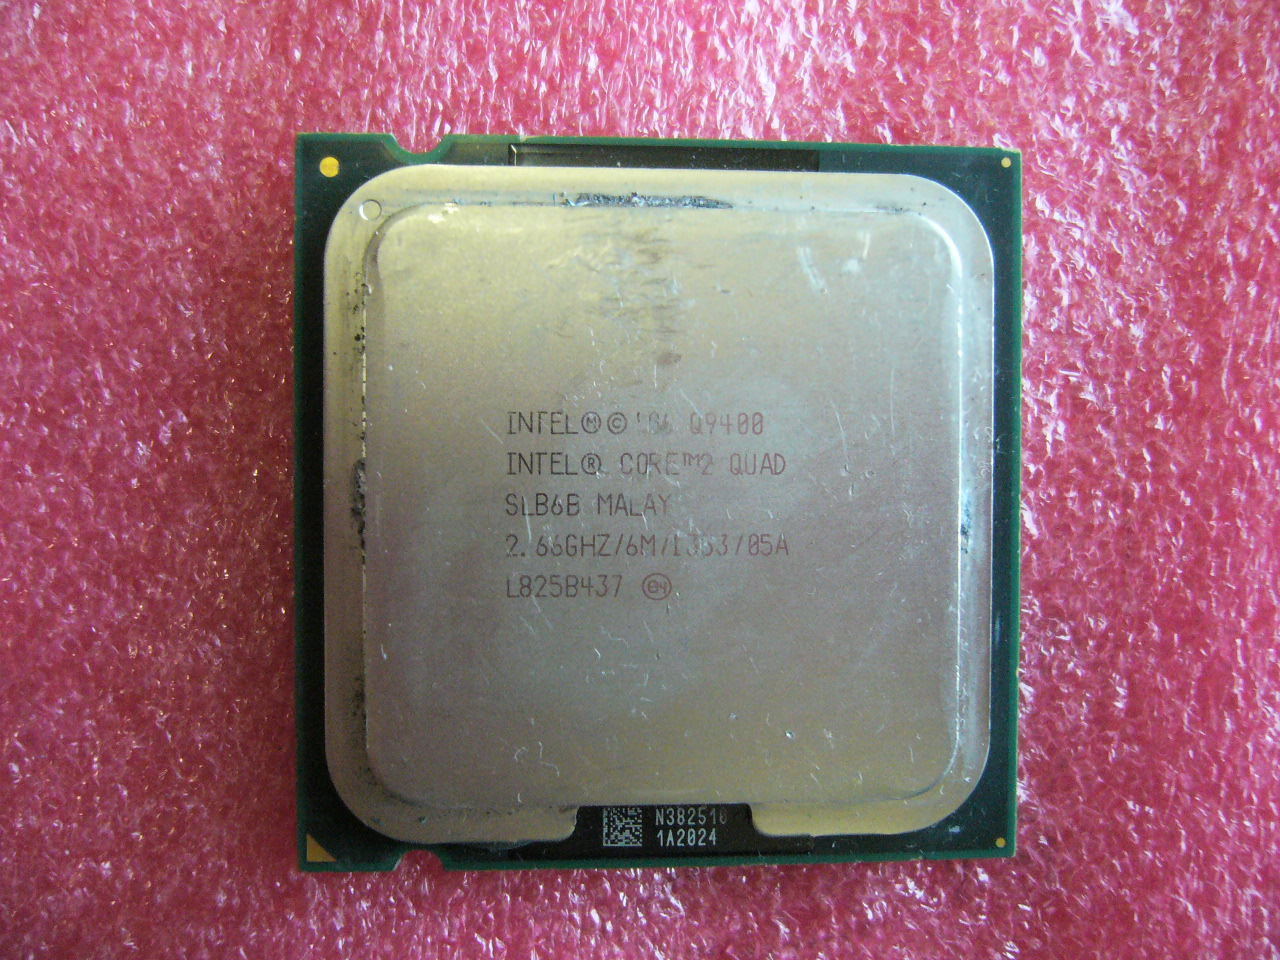 QTY 1x INTEL Quad Cores Q9400 CPU 2.66GHz/6MB/1333Mhz LGA775 SLB6B - zum Schließen ins Bild klicken